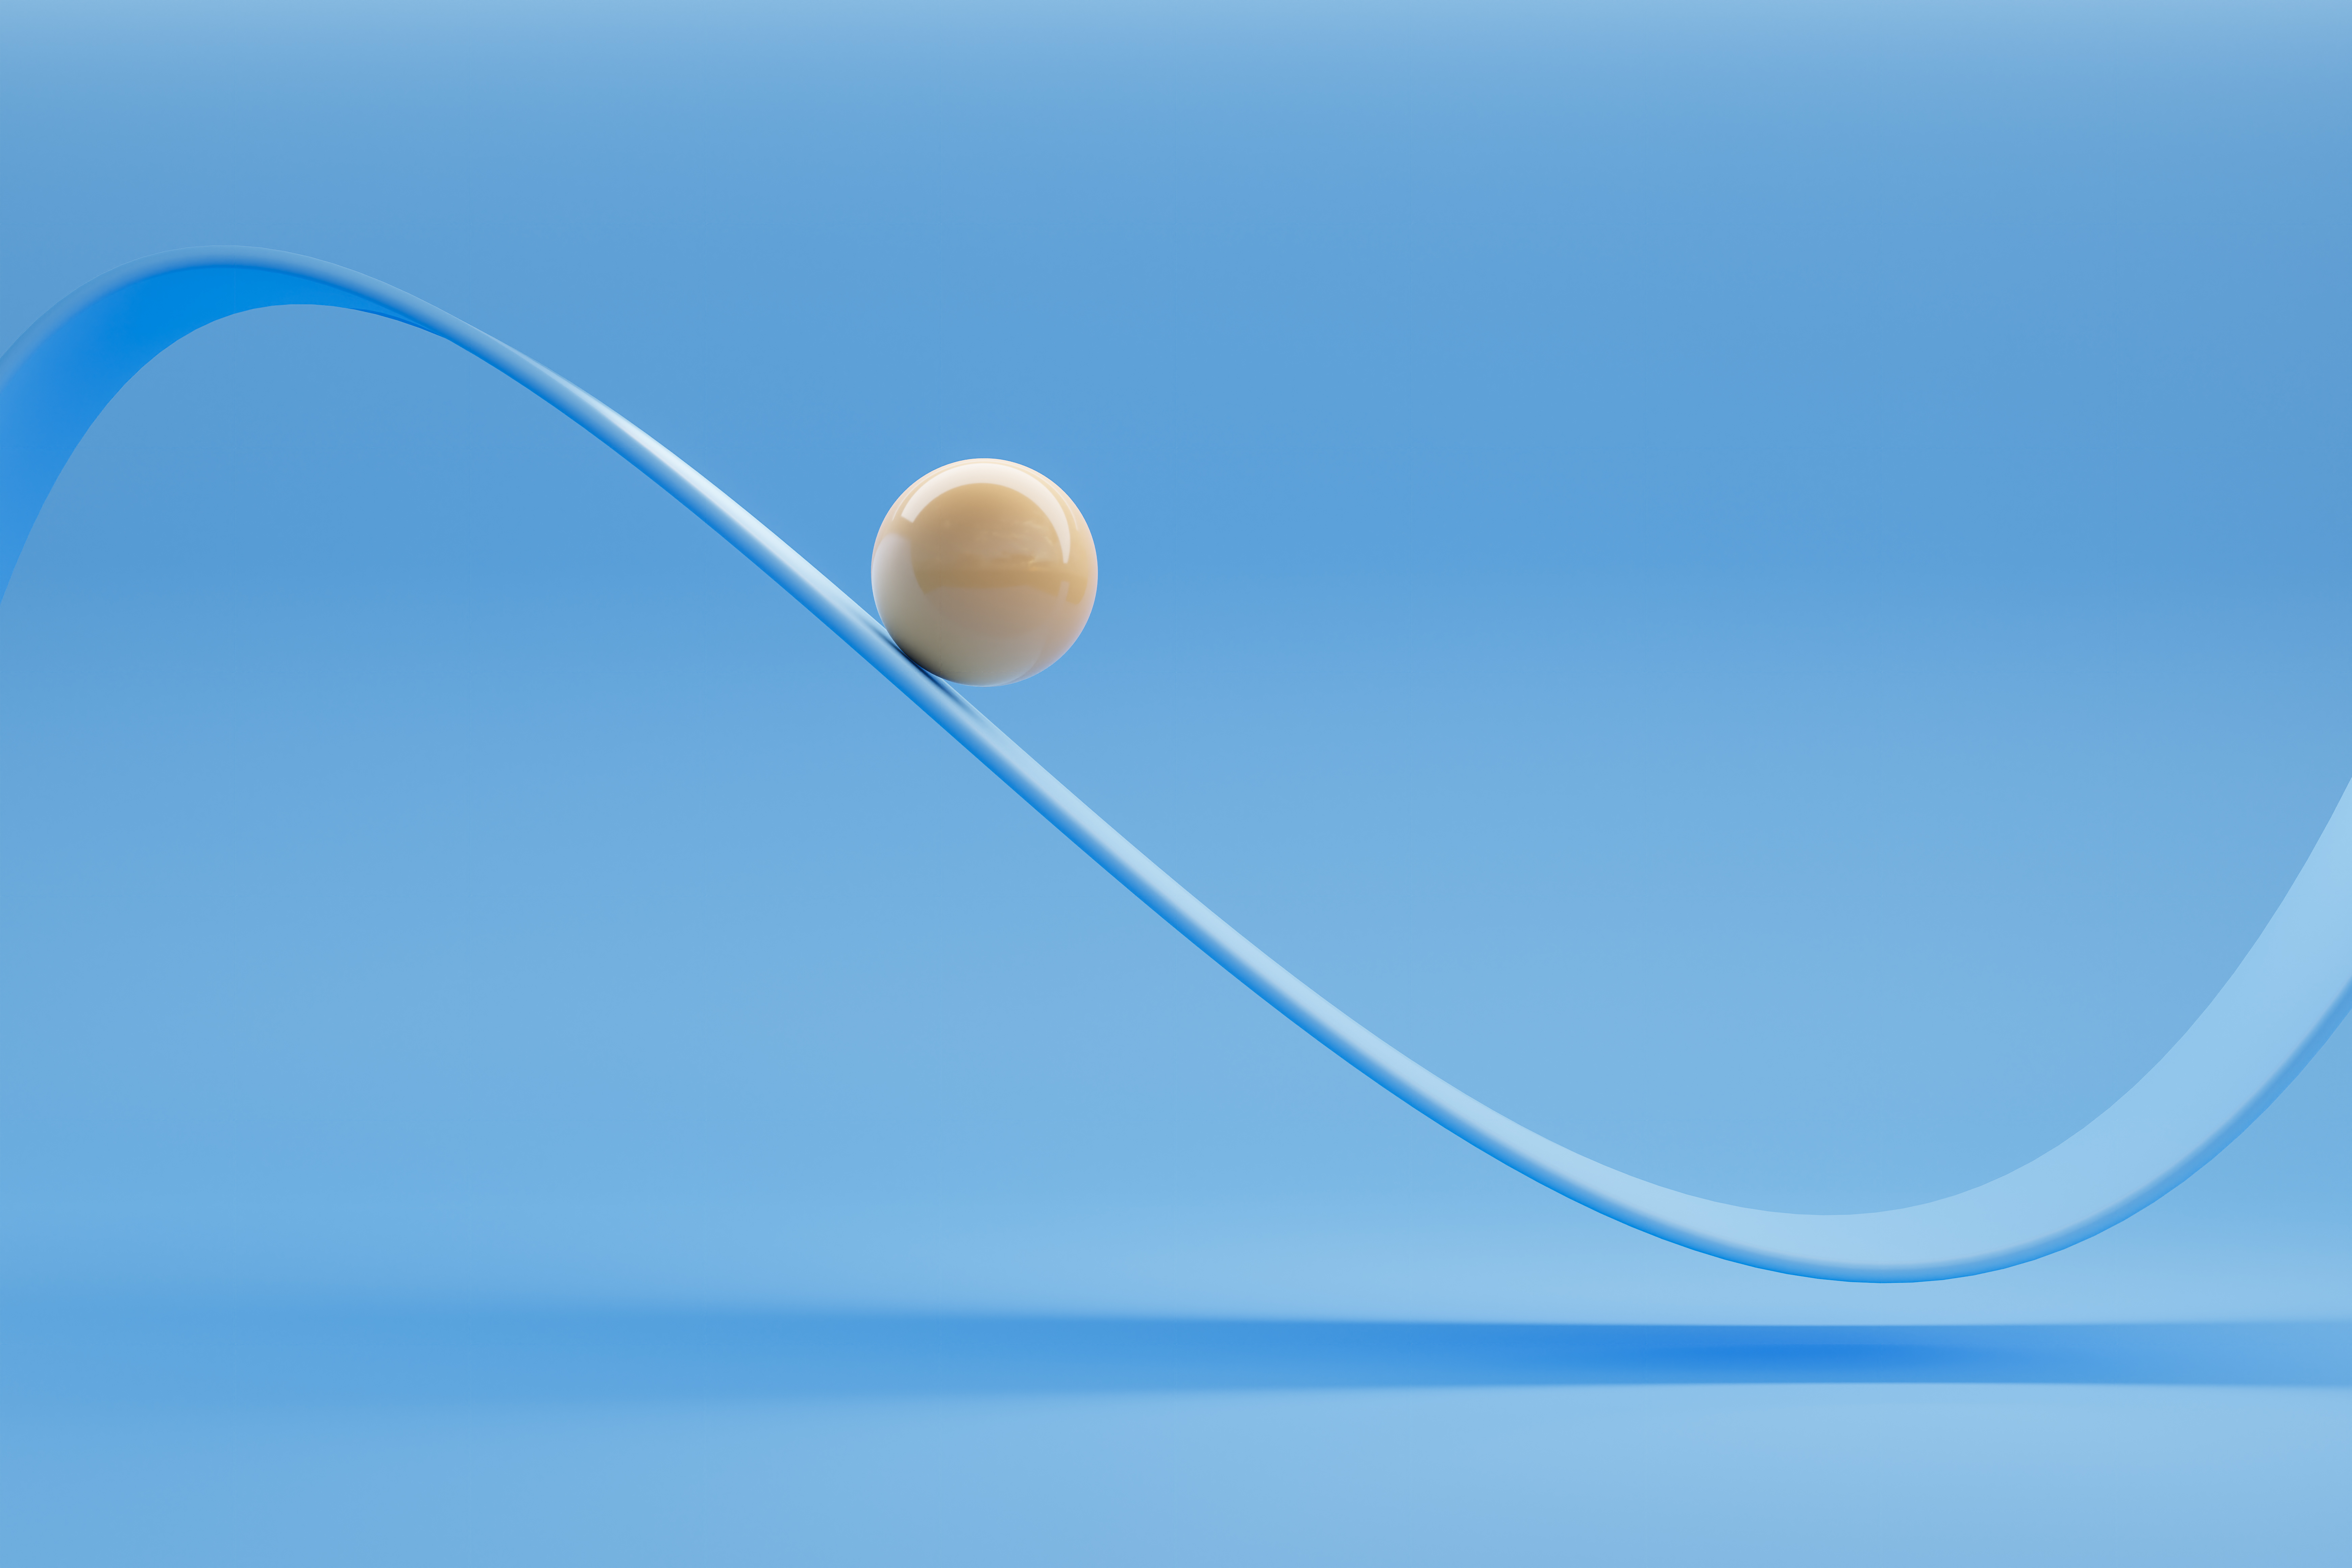 Mavi bir arka plana karşı salınımlı bir eğri boyunca hareket eden parlak beyaz seramik bir topun görüntüsü.